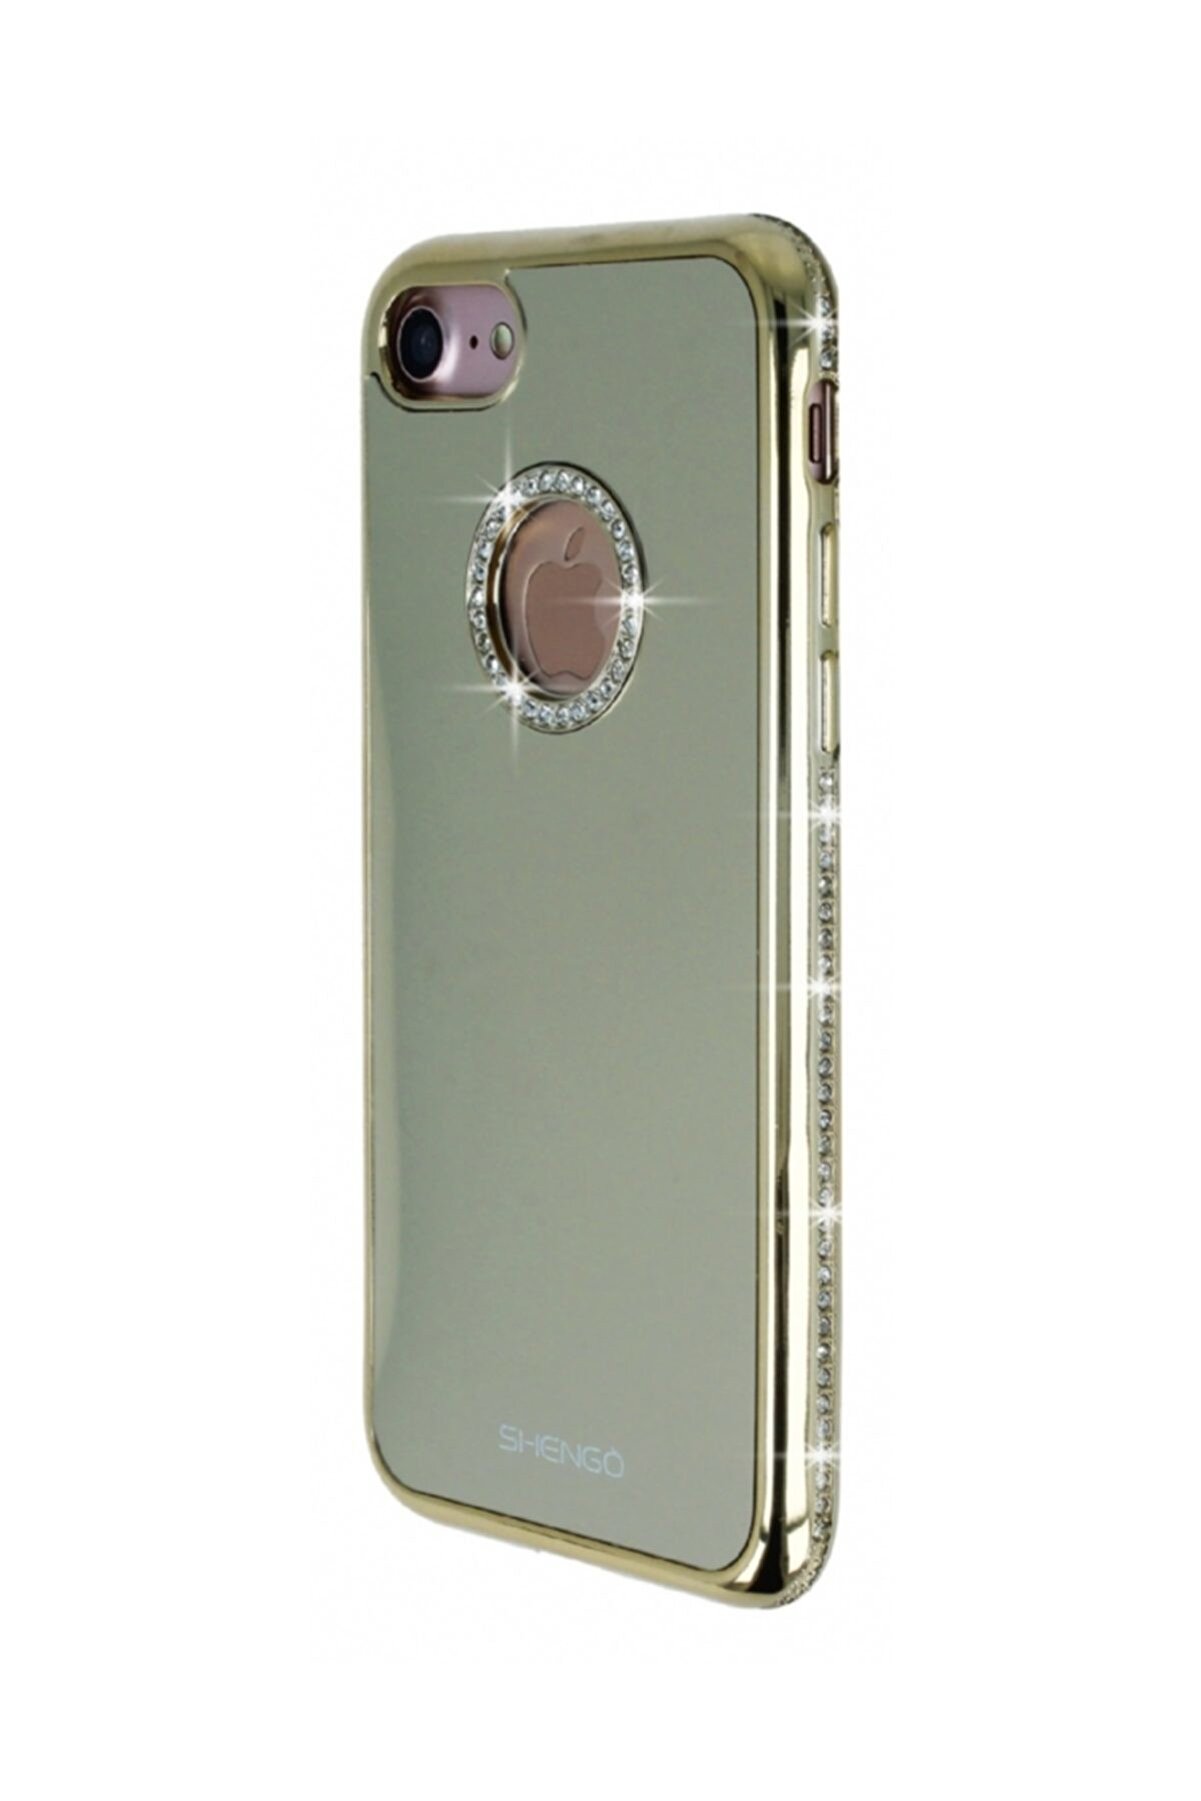 Shengo iPhone 7 Taşlı Gold Silikon Kılıf